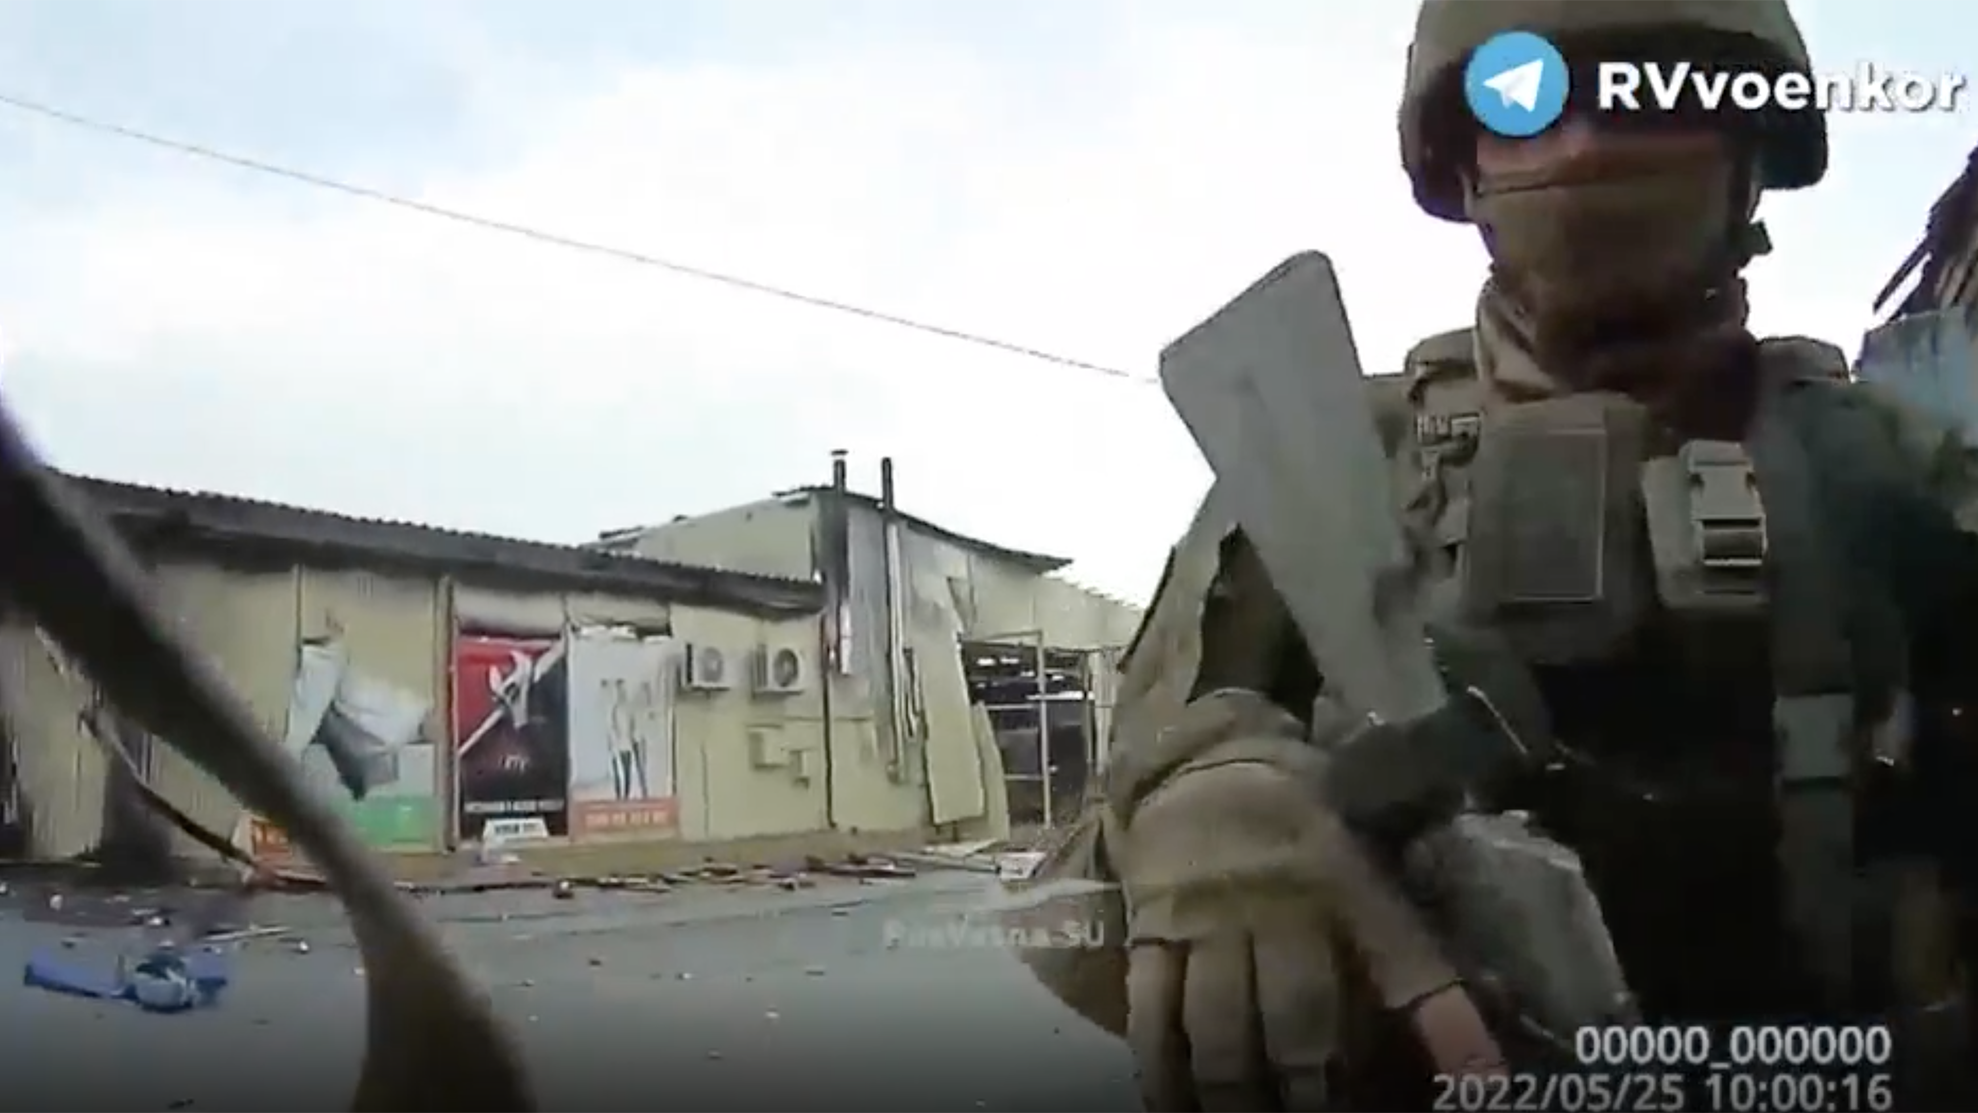 adlı bir asker tarafından çekilen vücut kamera görüntüleri "Rusak" 25 Mayıs'ta Rus birlikleri, Ukrayna'nın Lyman kenti çevresindeki yıkılan binalardan ve boş sokaklardan geçerek inanılmaz bir yıkım gösterdi.